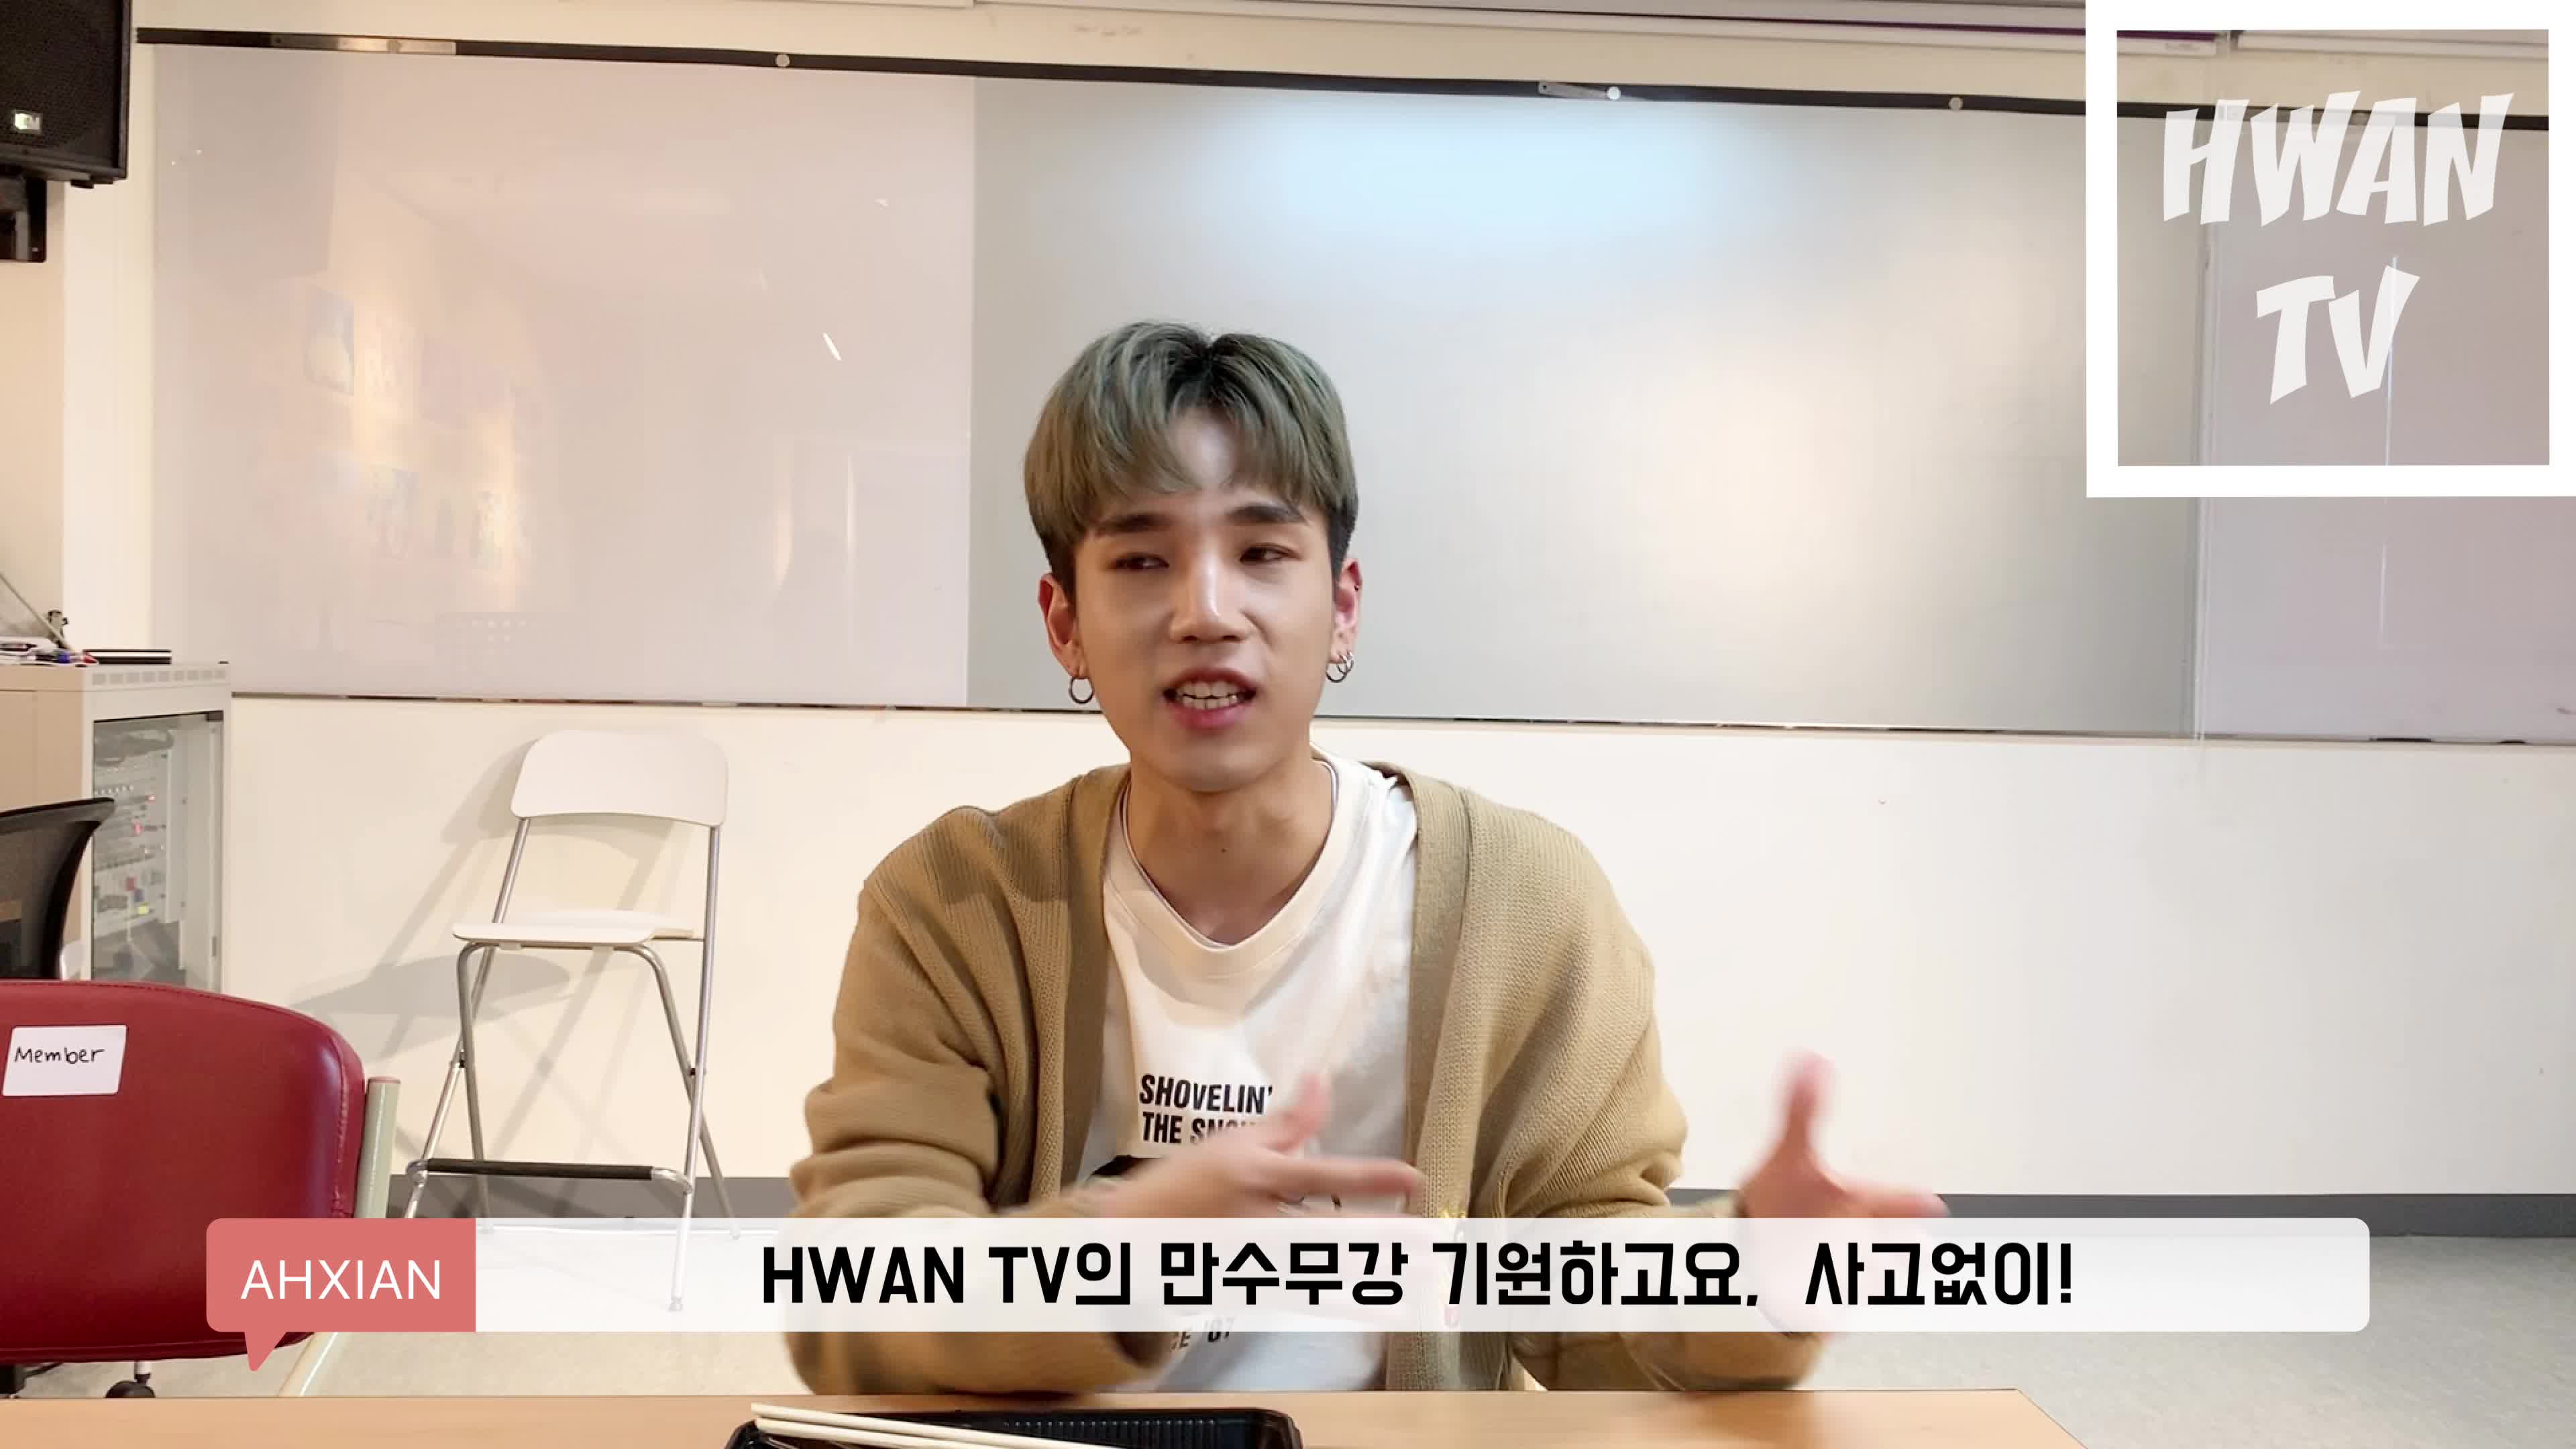 [HWAN TV] 02. VANNER와 팬의 은밀한 데이트 현장 공개! (아시안 첫 출연)